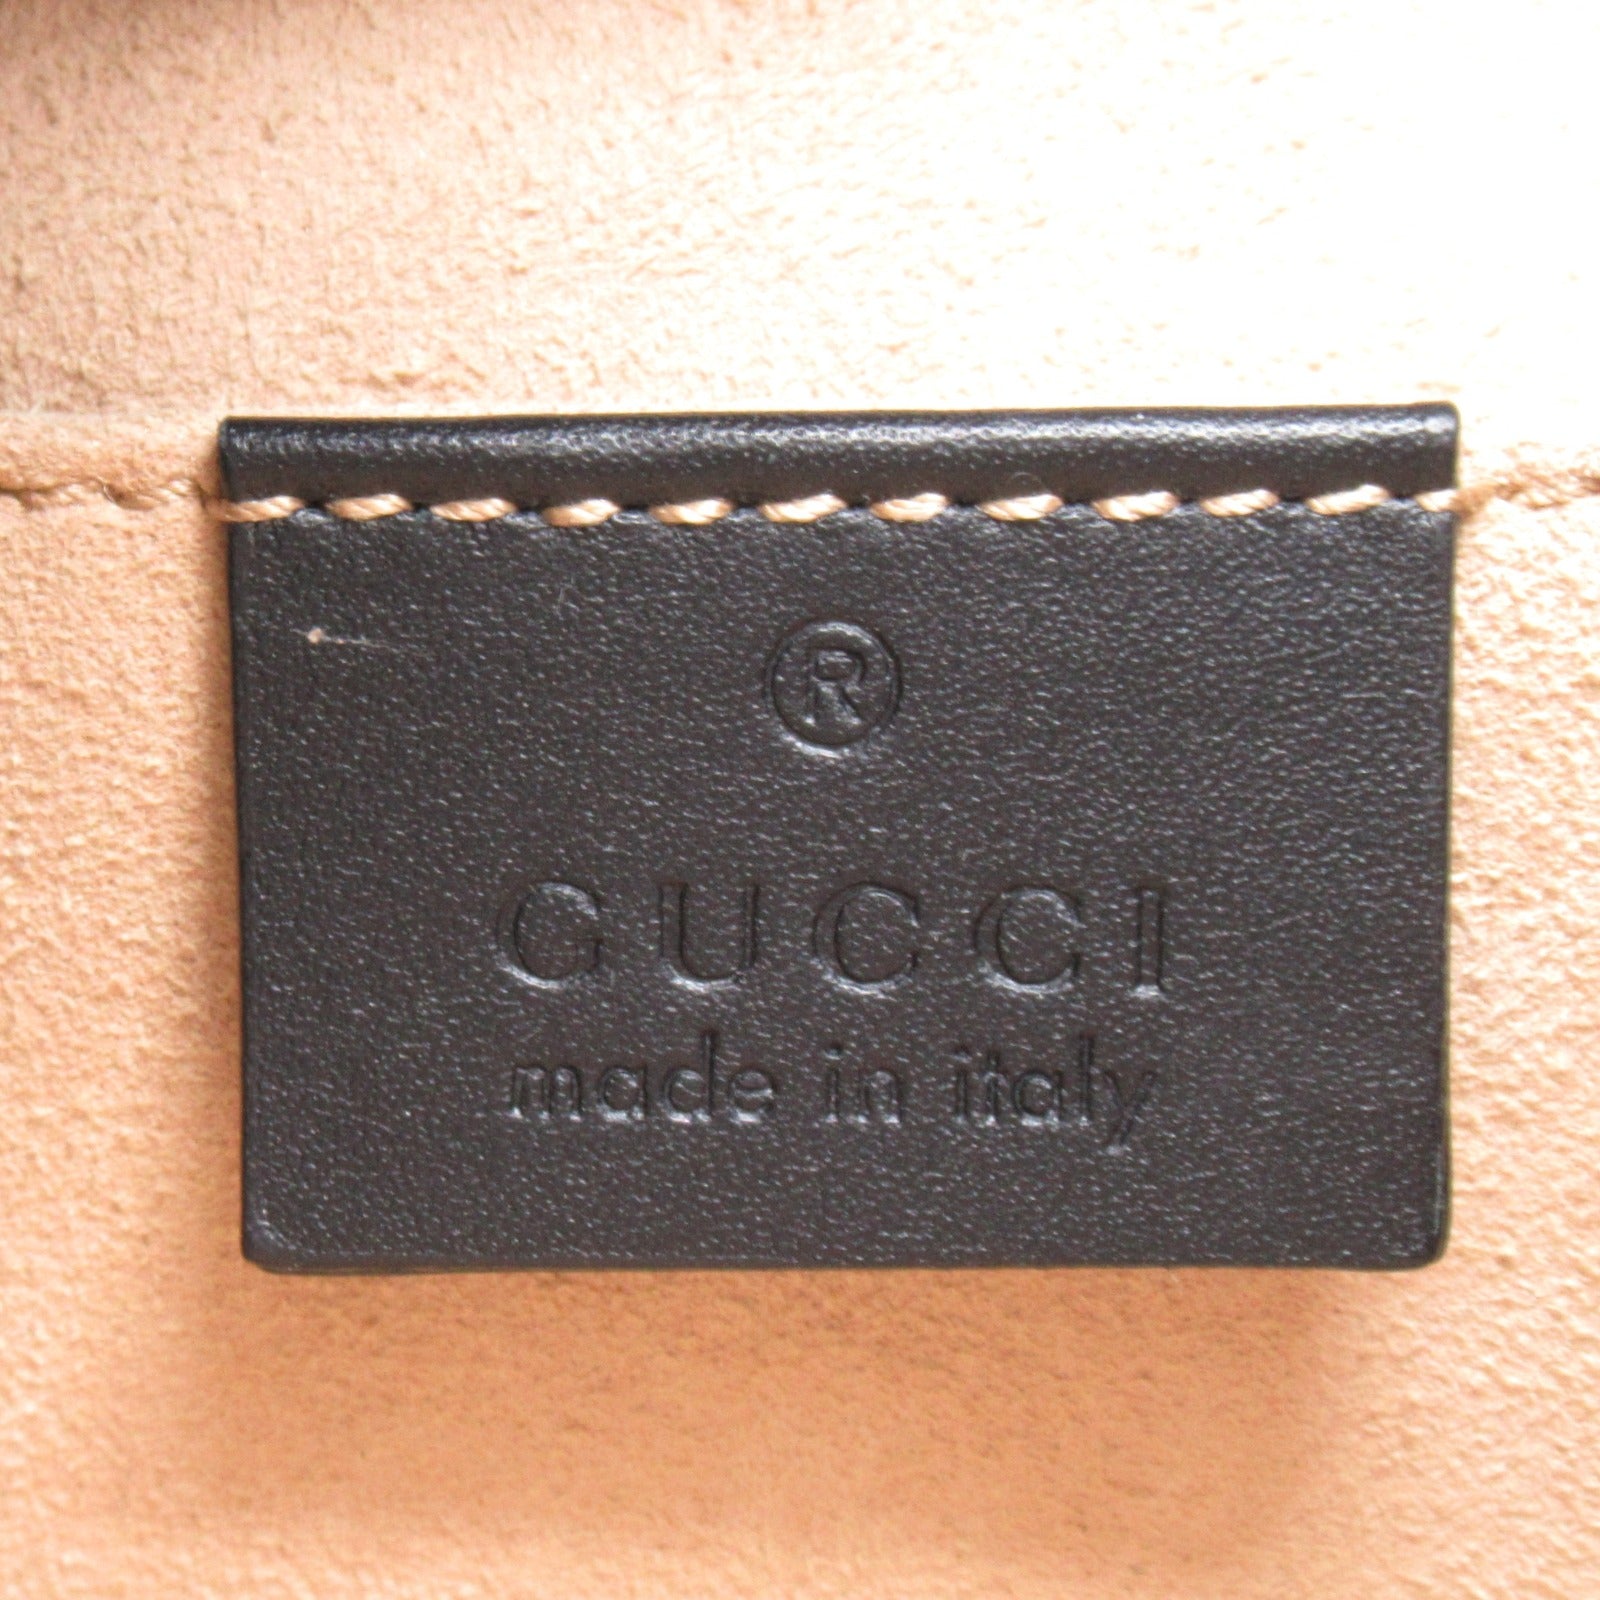 Gucci Ophidia 2w Shoulder Bag 2way Shoulder Bag Patent Leather   Black  550621